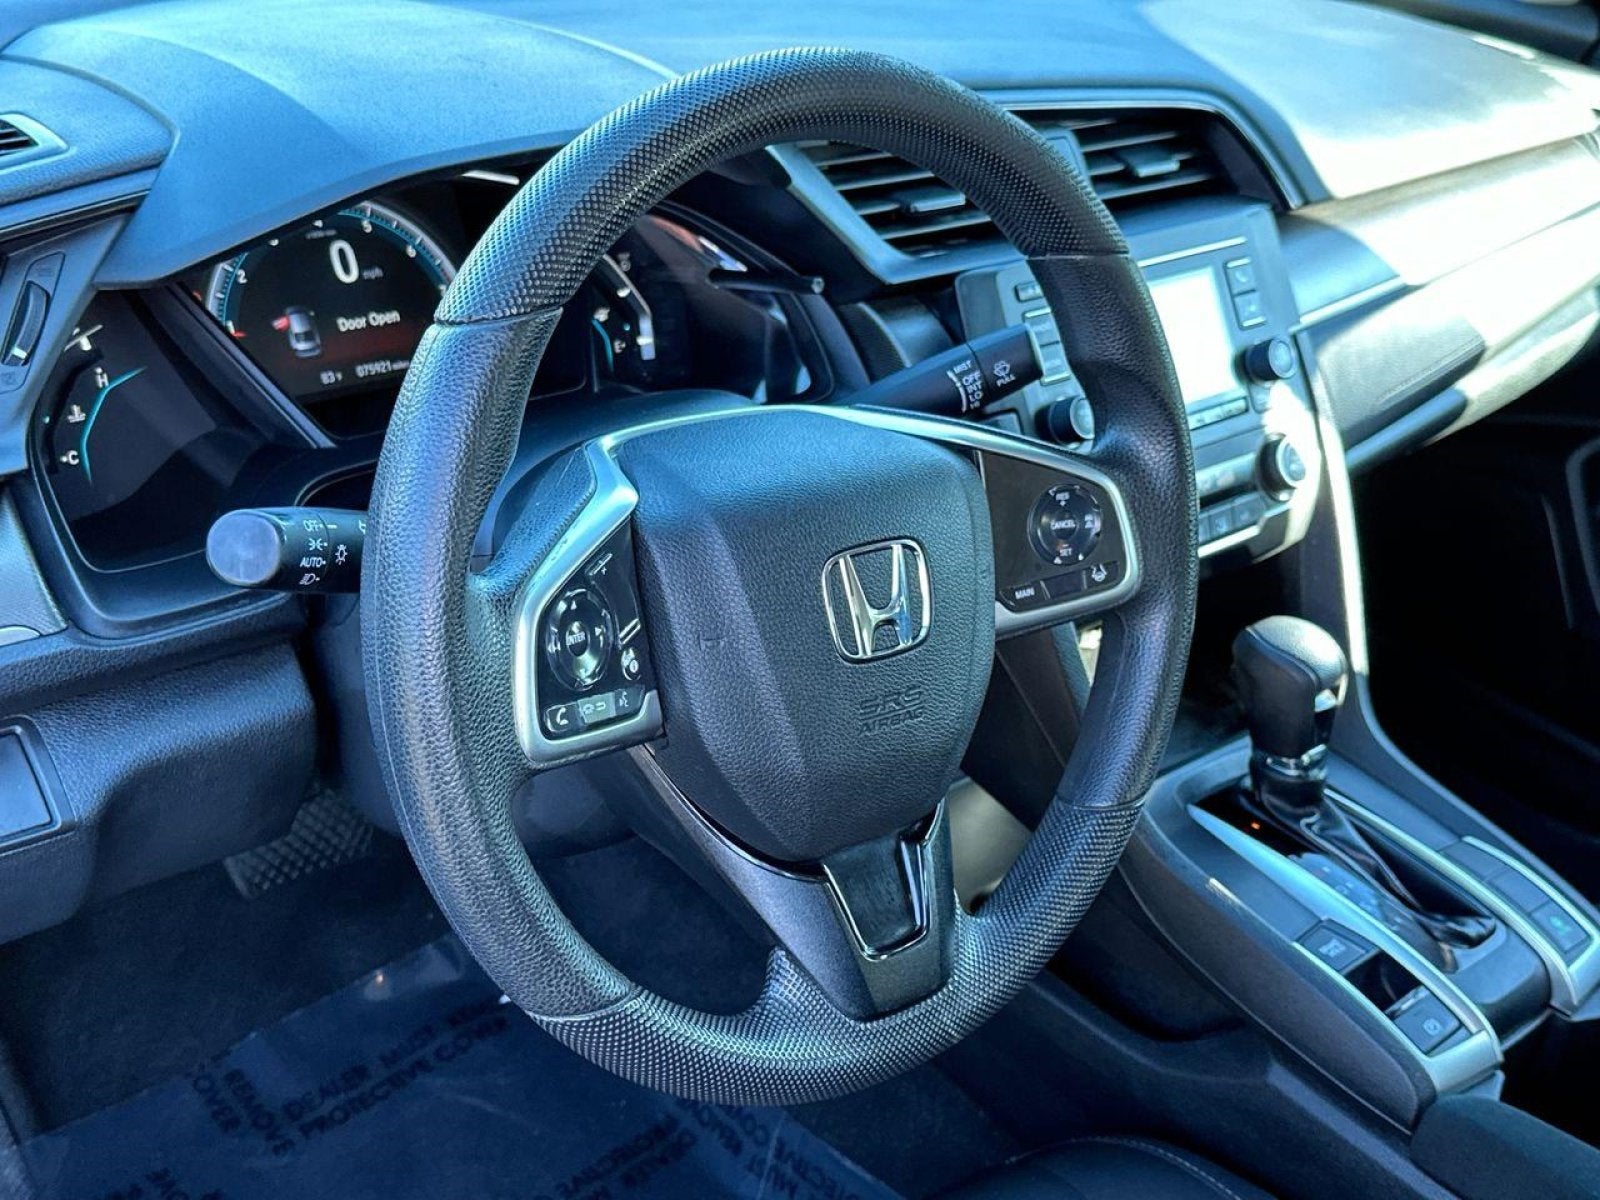 2021 Honda Civic Sedan LX